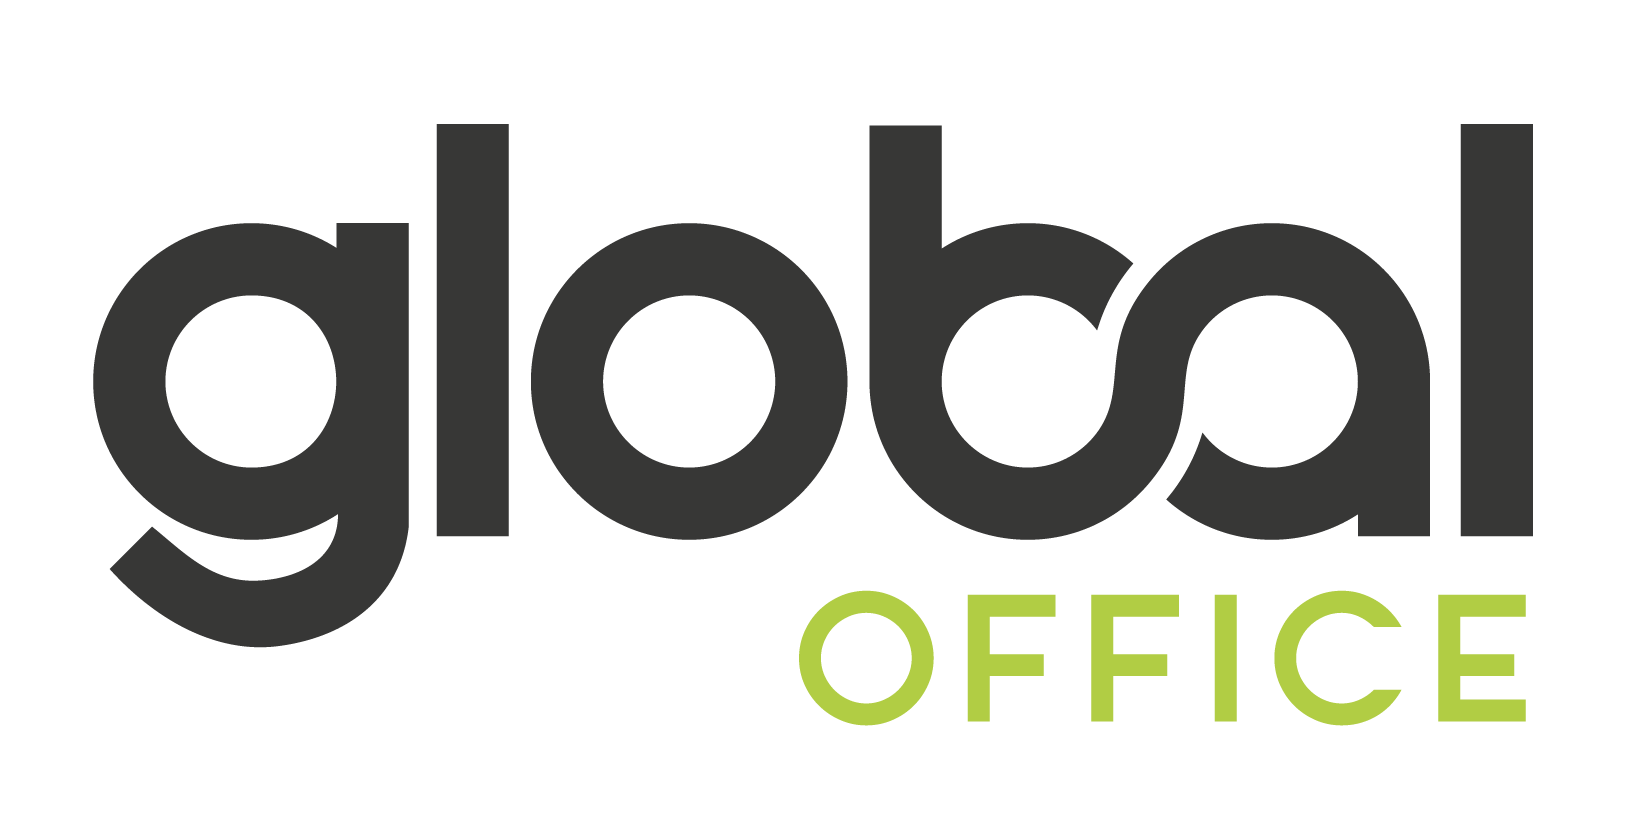 Global Office - Logo-01